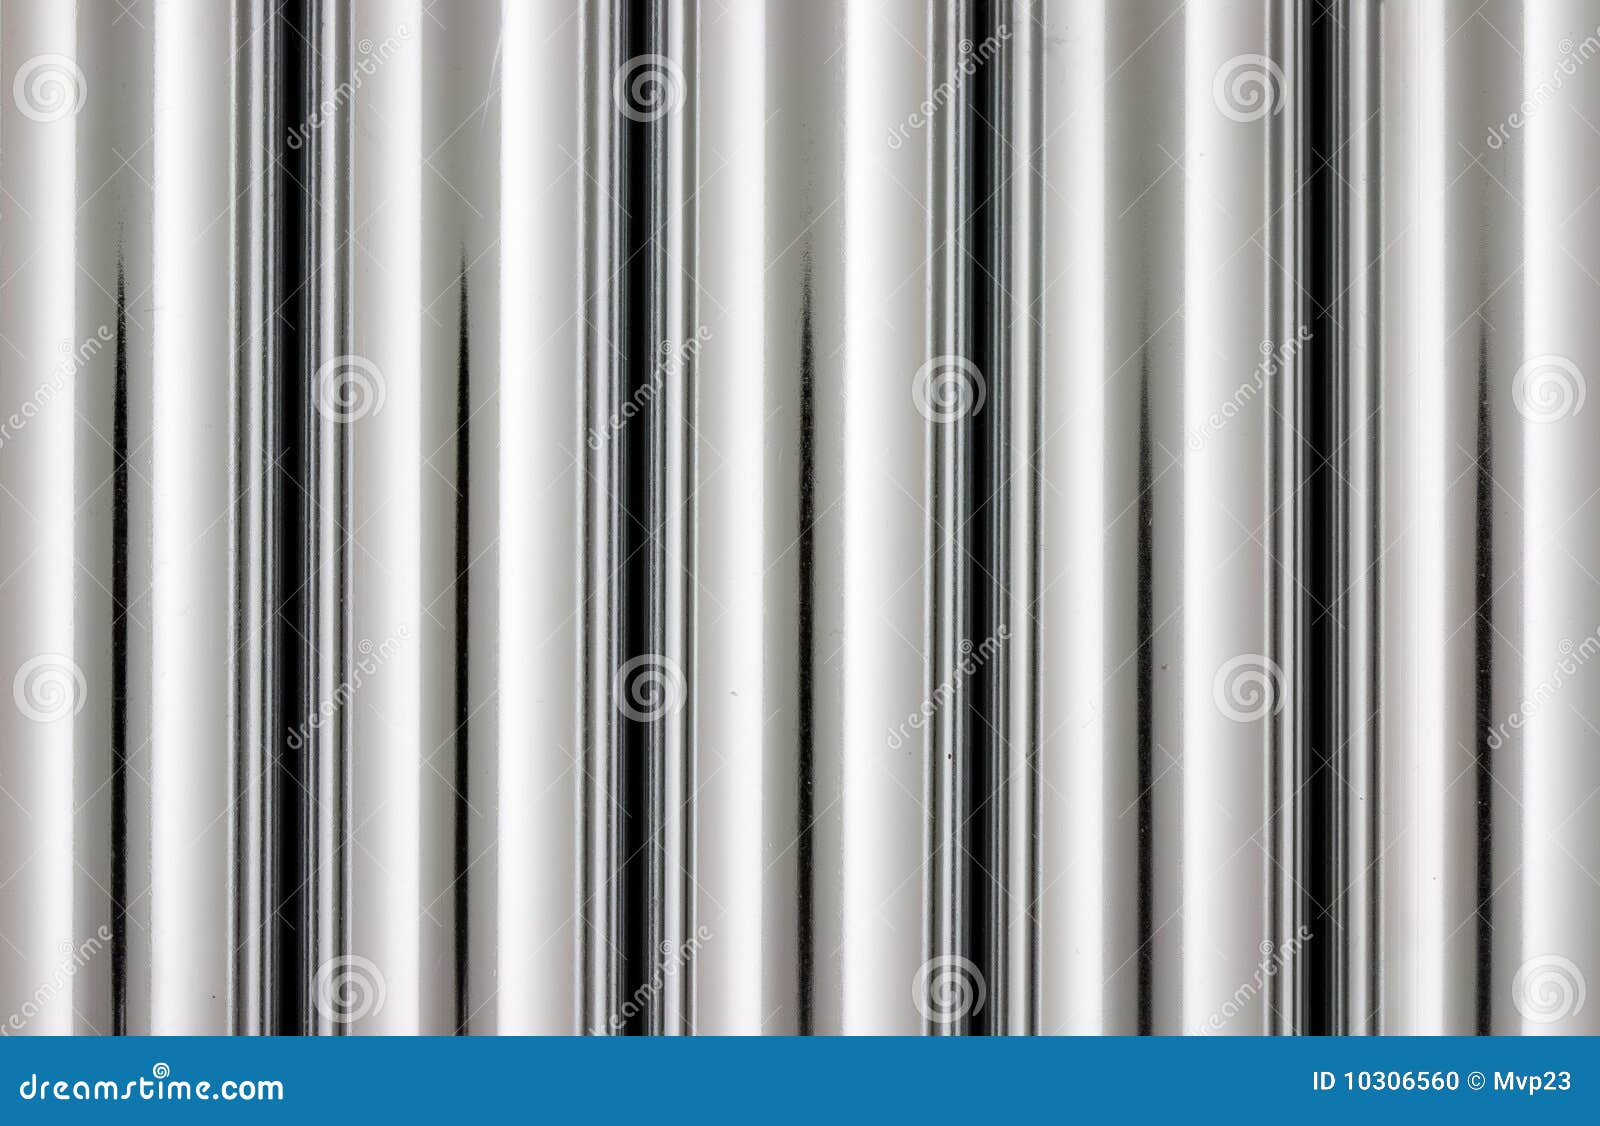 chrome pipes